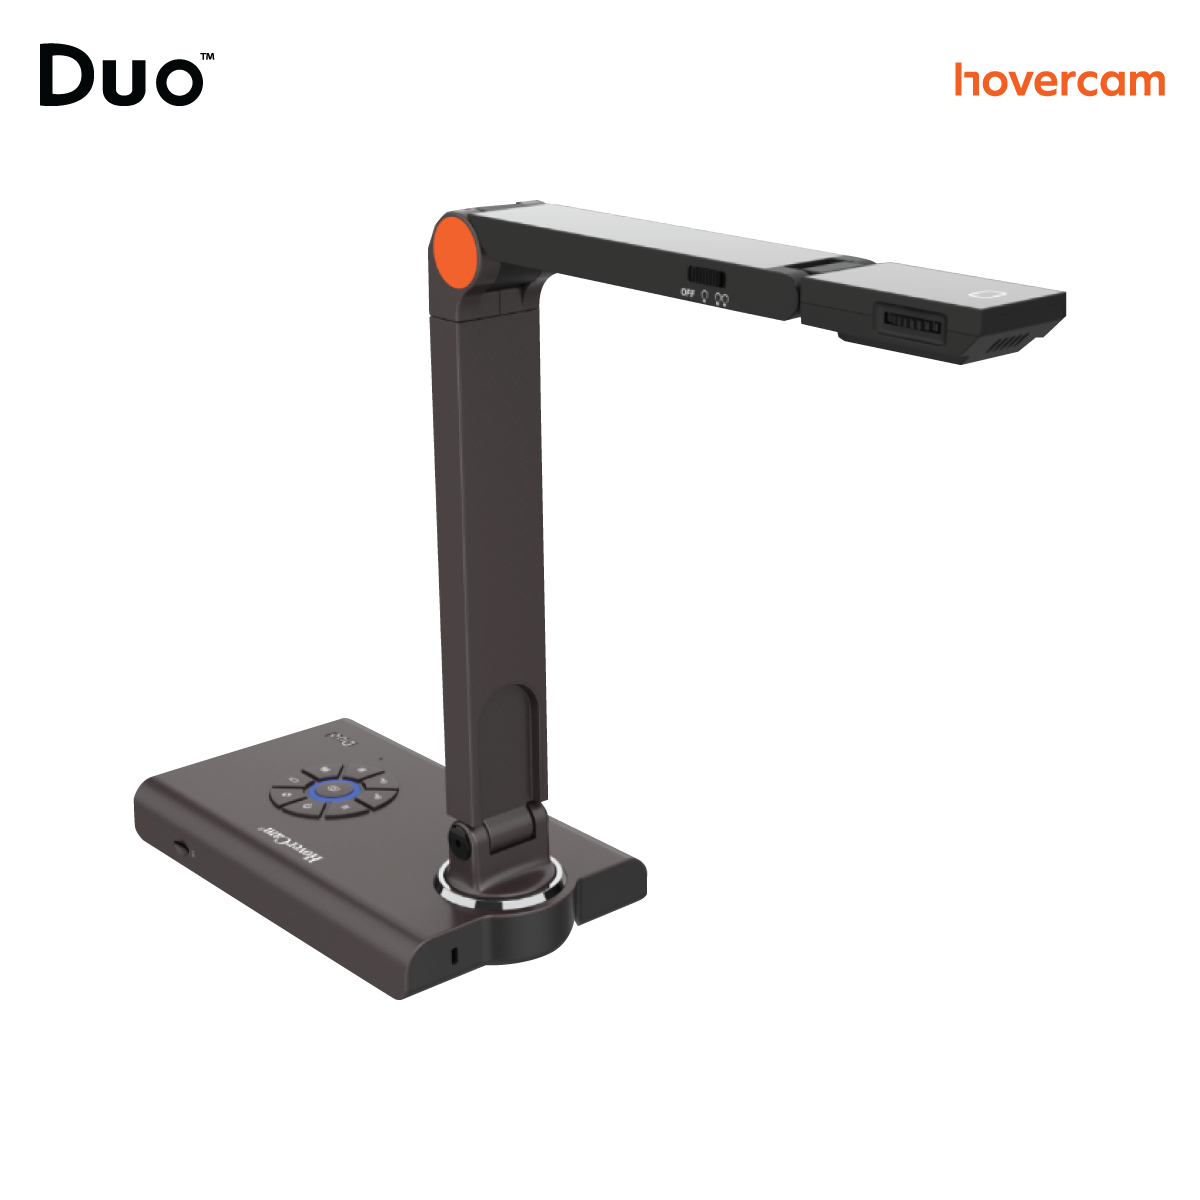 Duo | Hovercam Document Camera